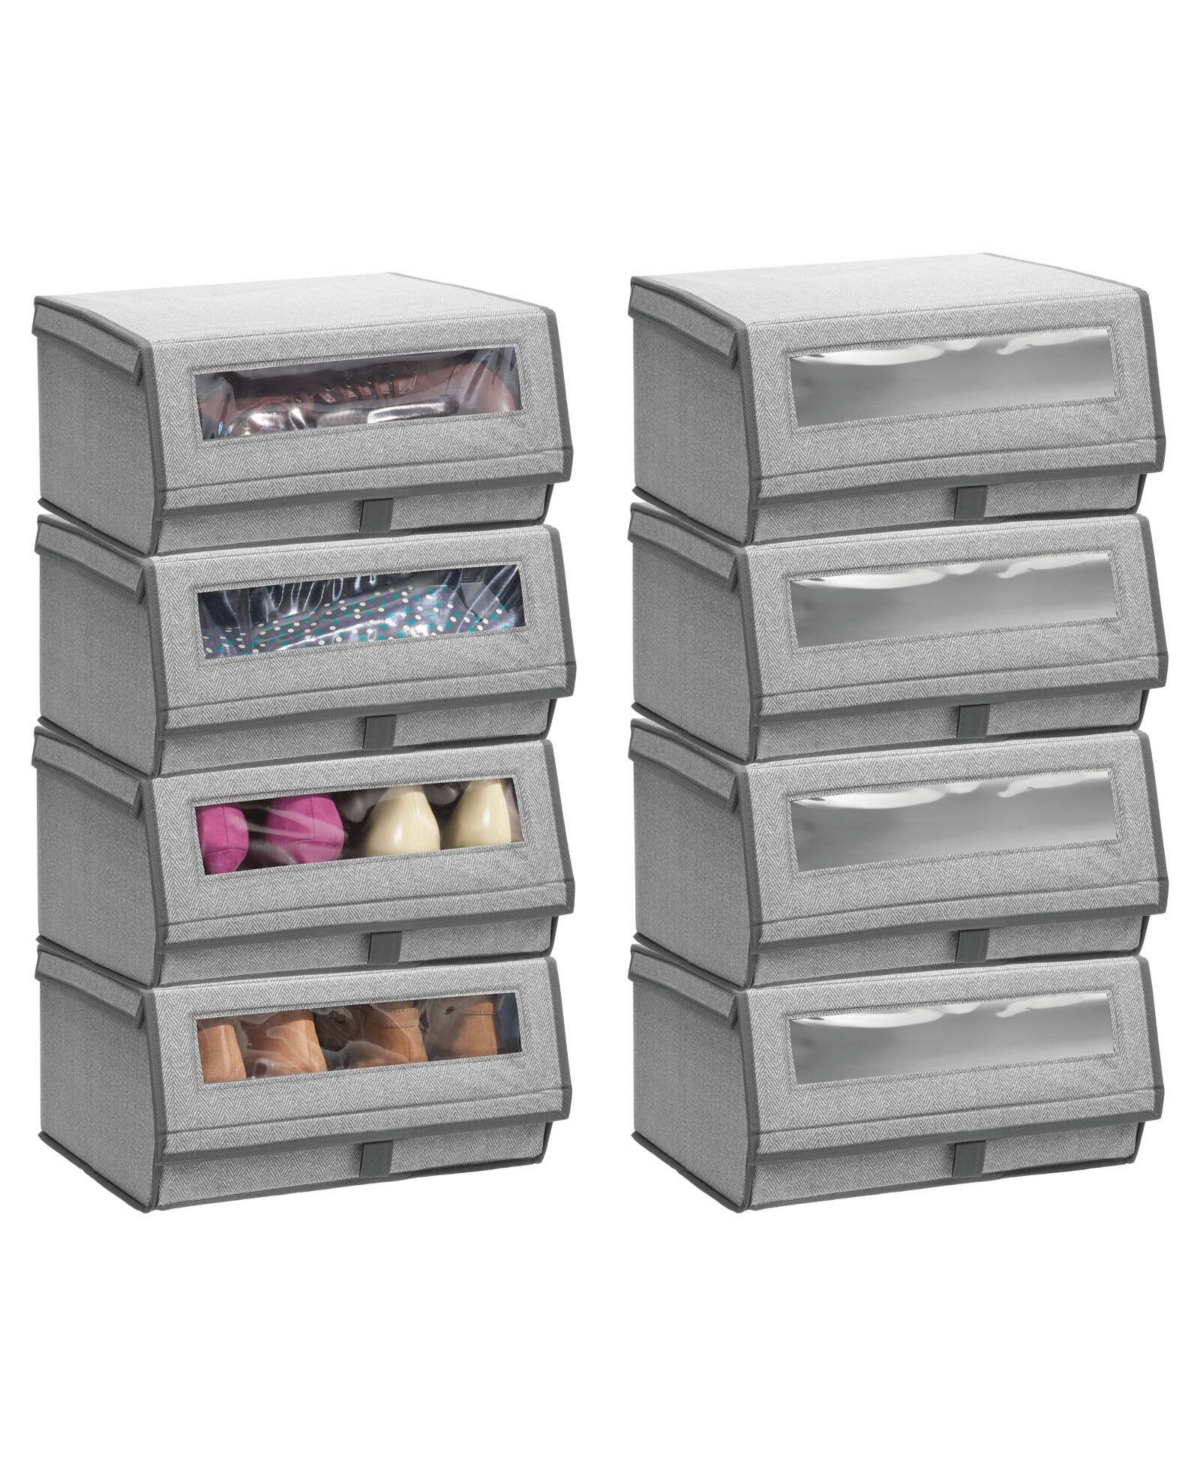 Large Fabric Closet Shoe Storage Box, 8 Pack, Gray Herringbone - Gray herringbone